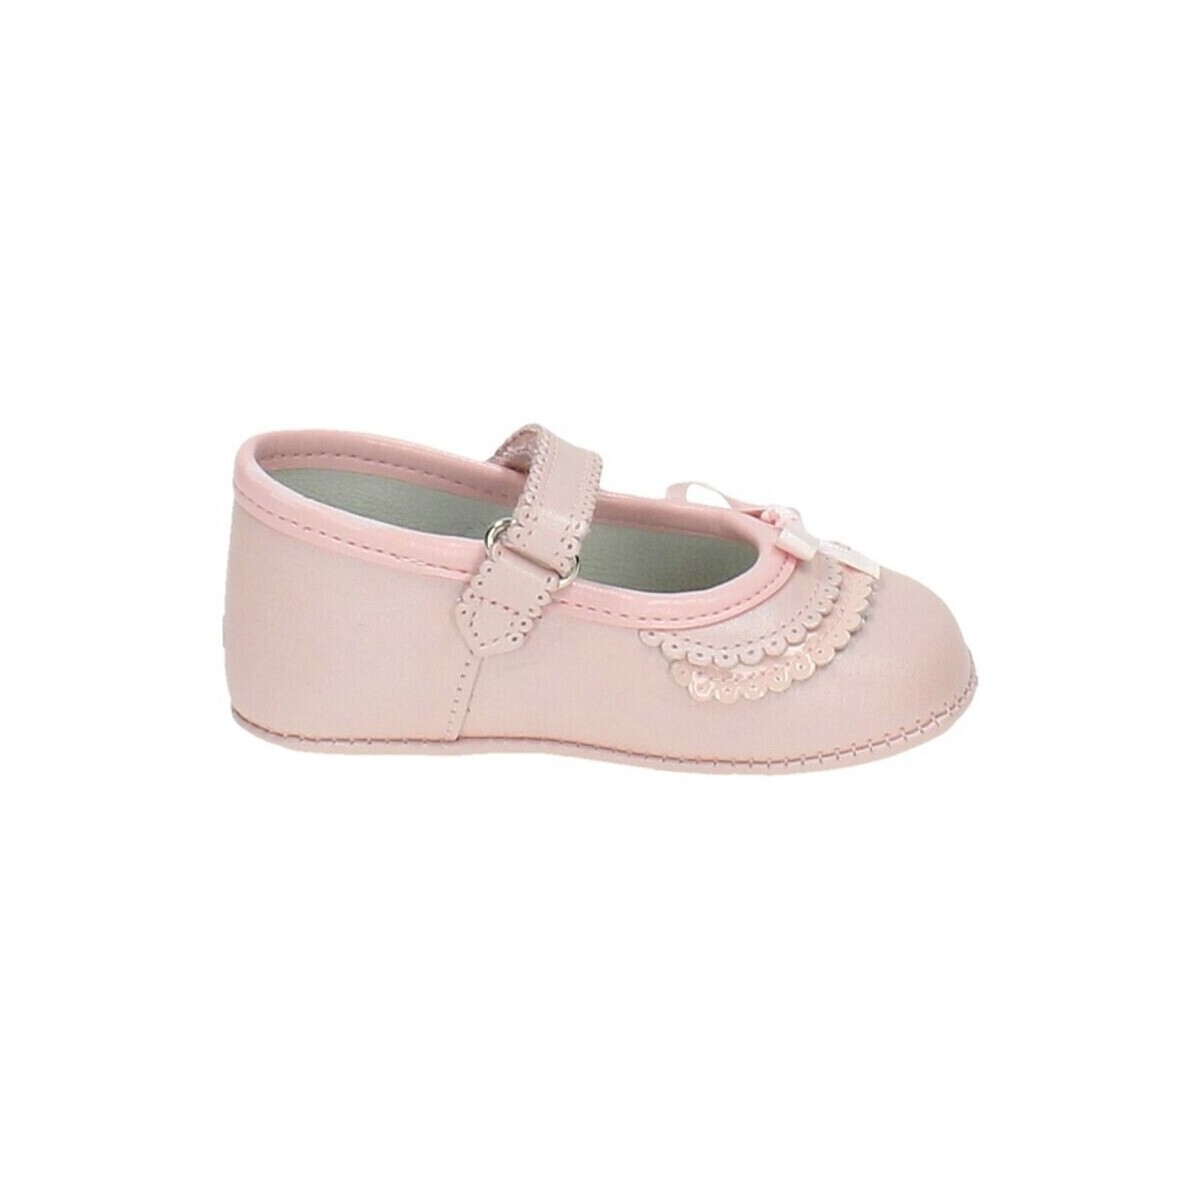 Schuhe Jungen Babyschuhe Citos 22622-15 Rosa